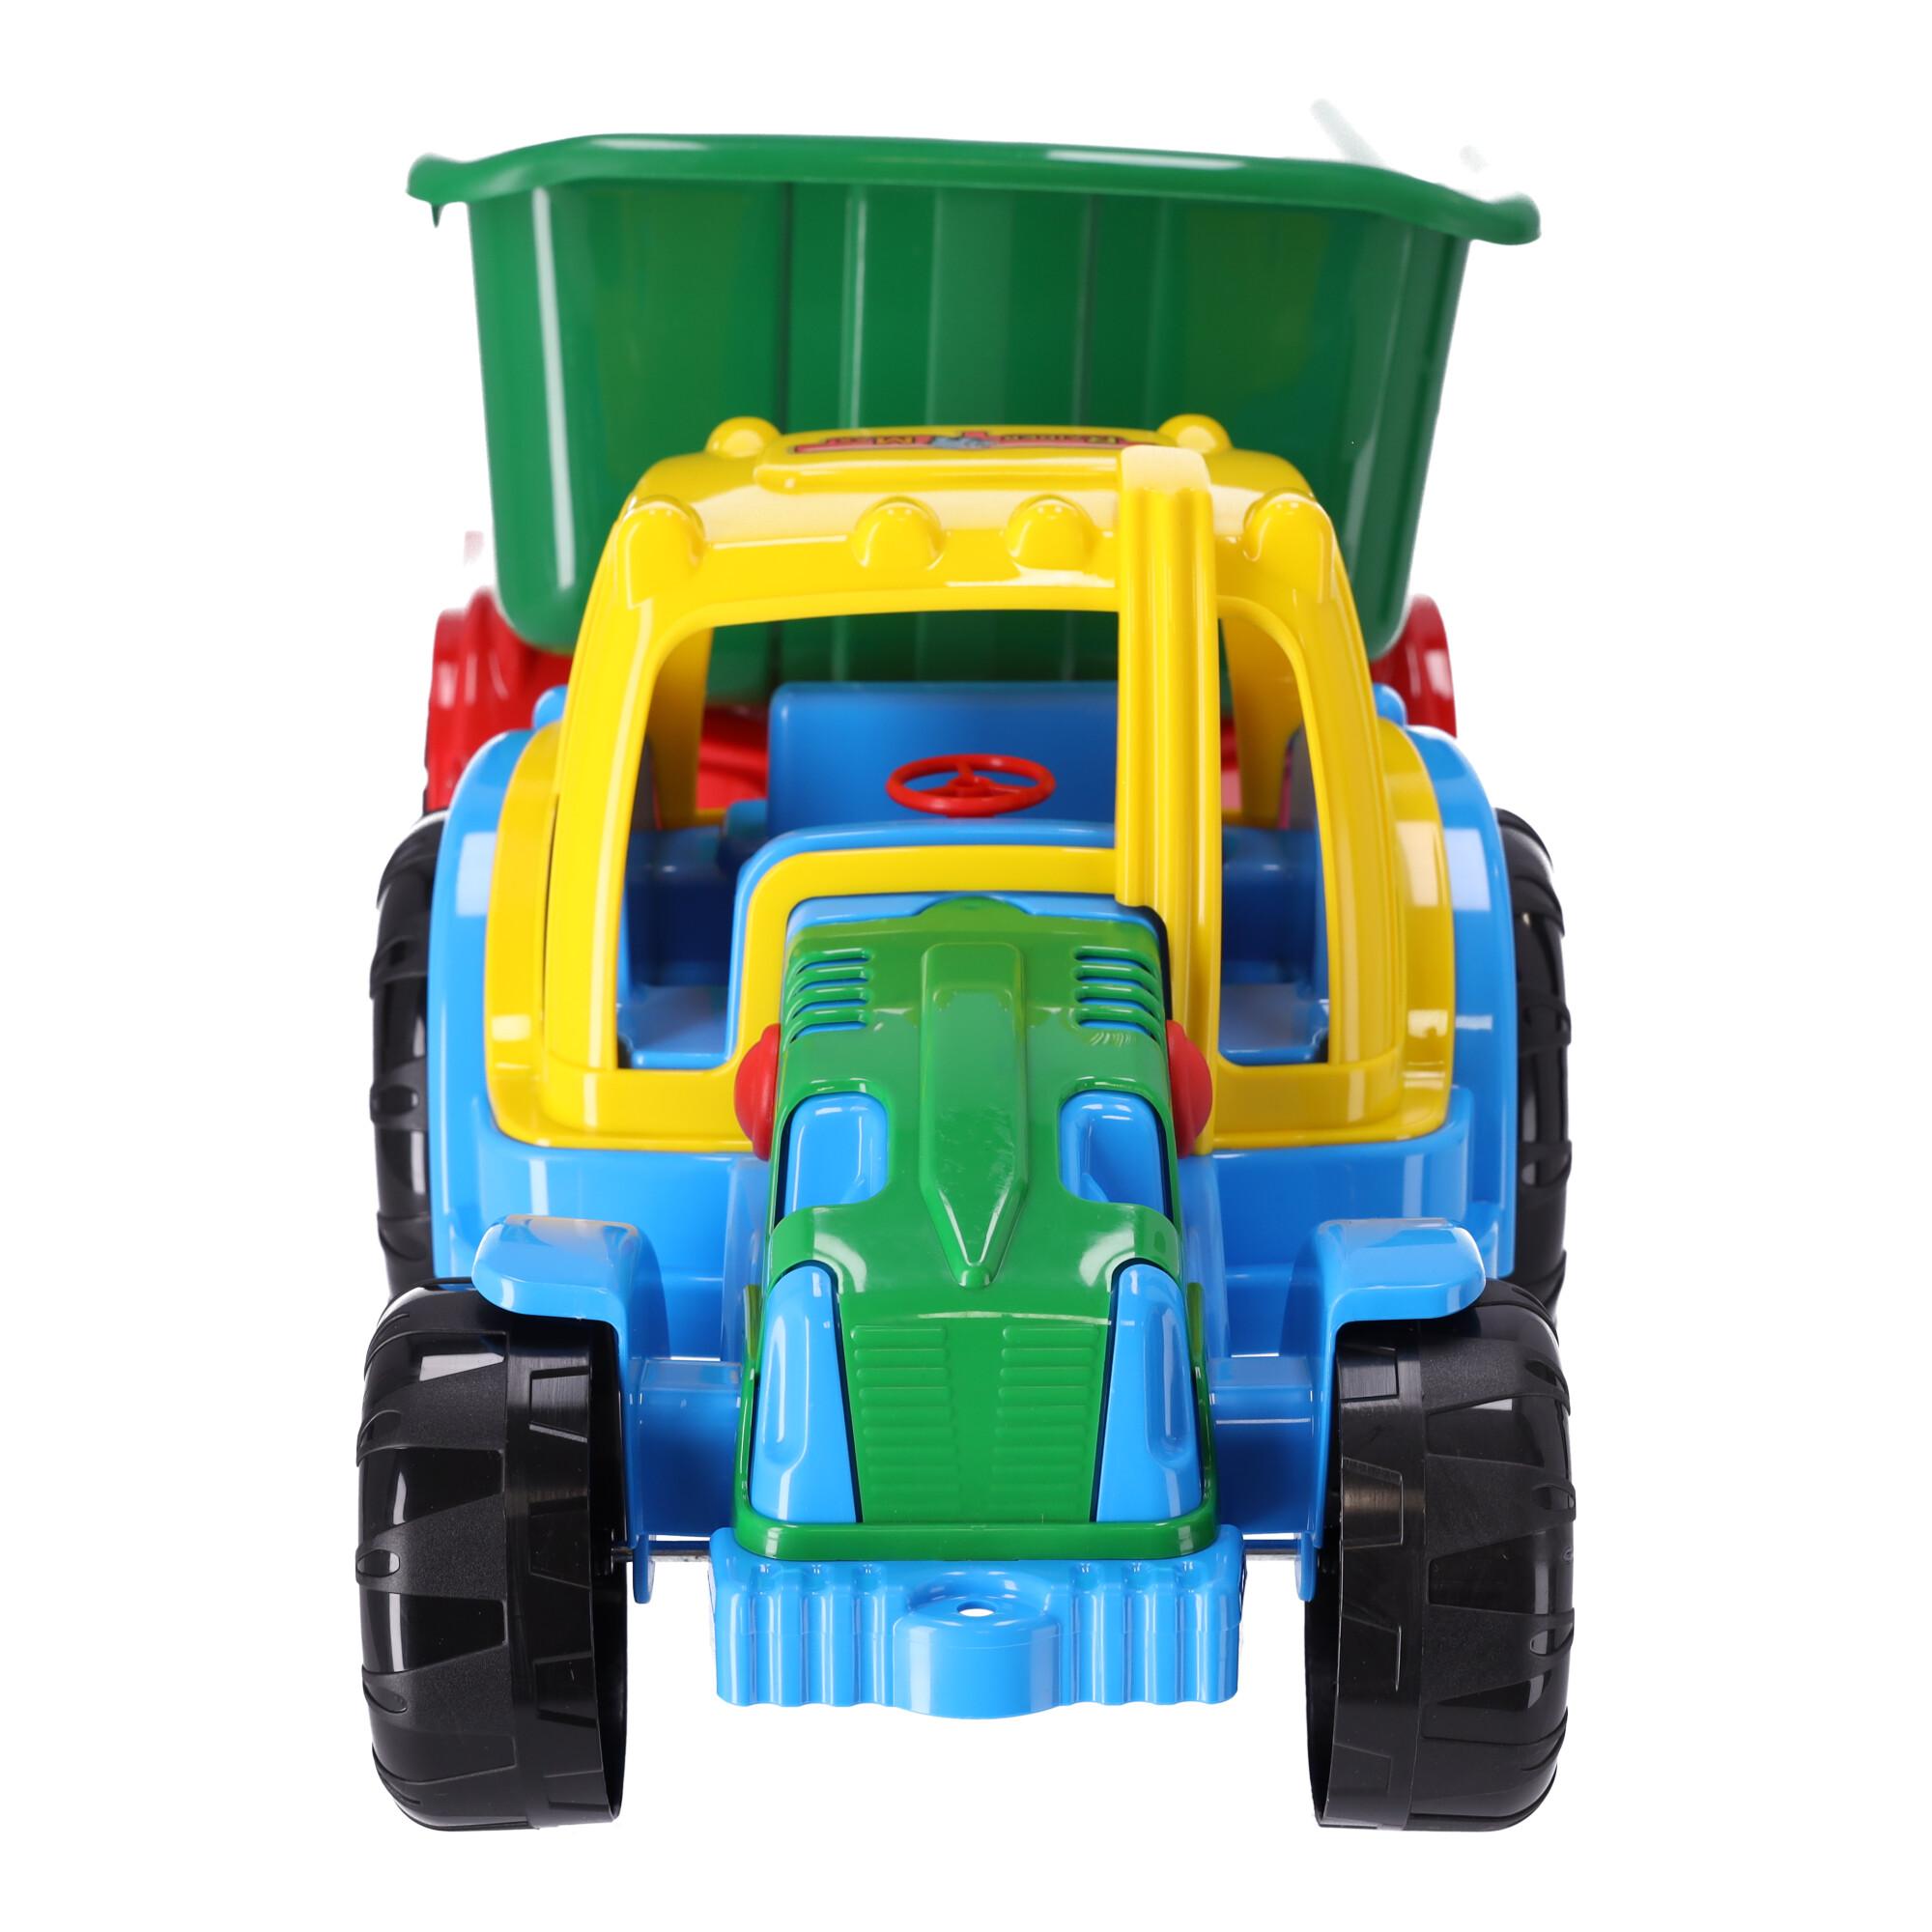 Traktor z przyczepą – model 343